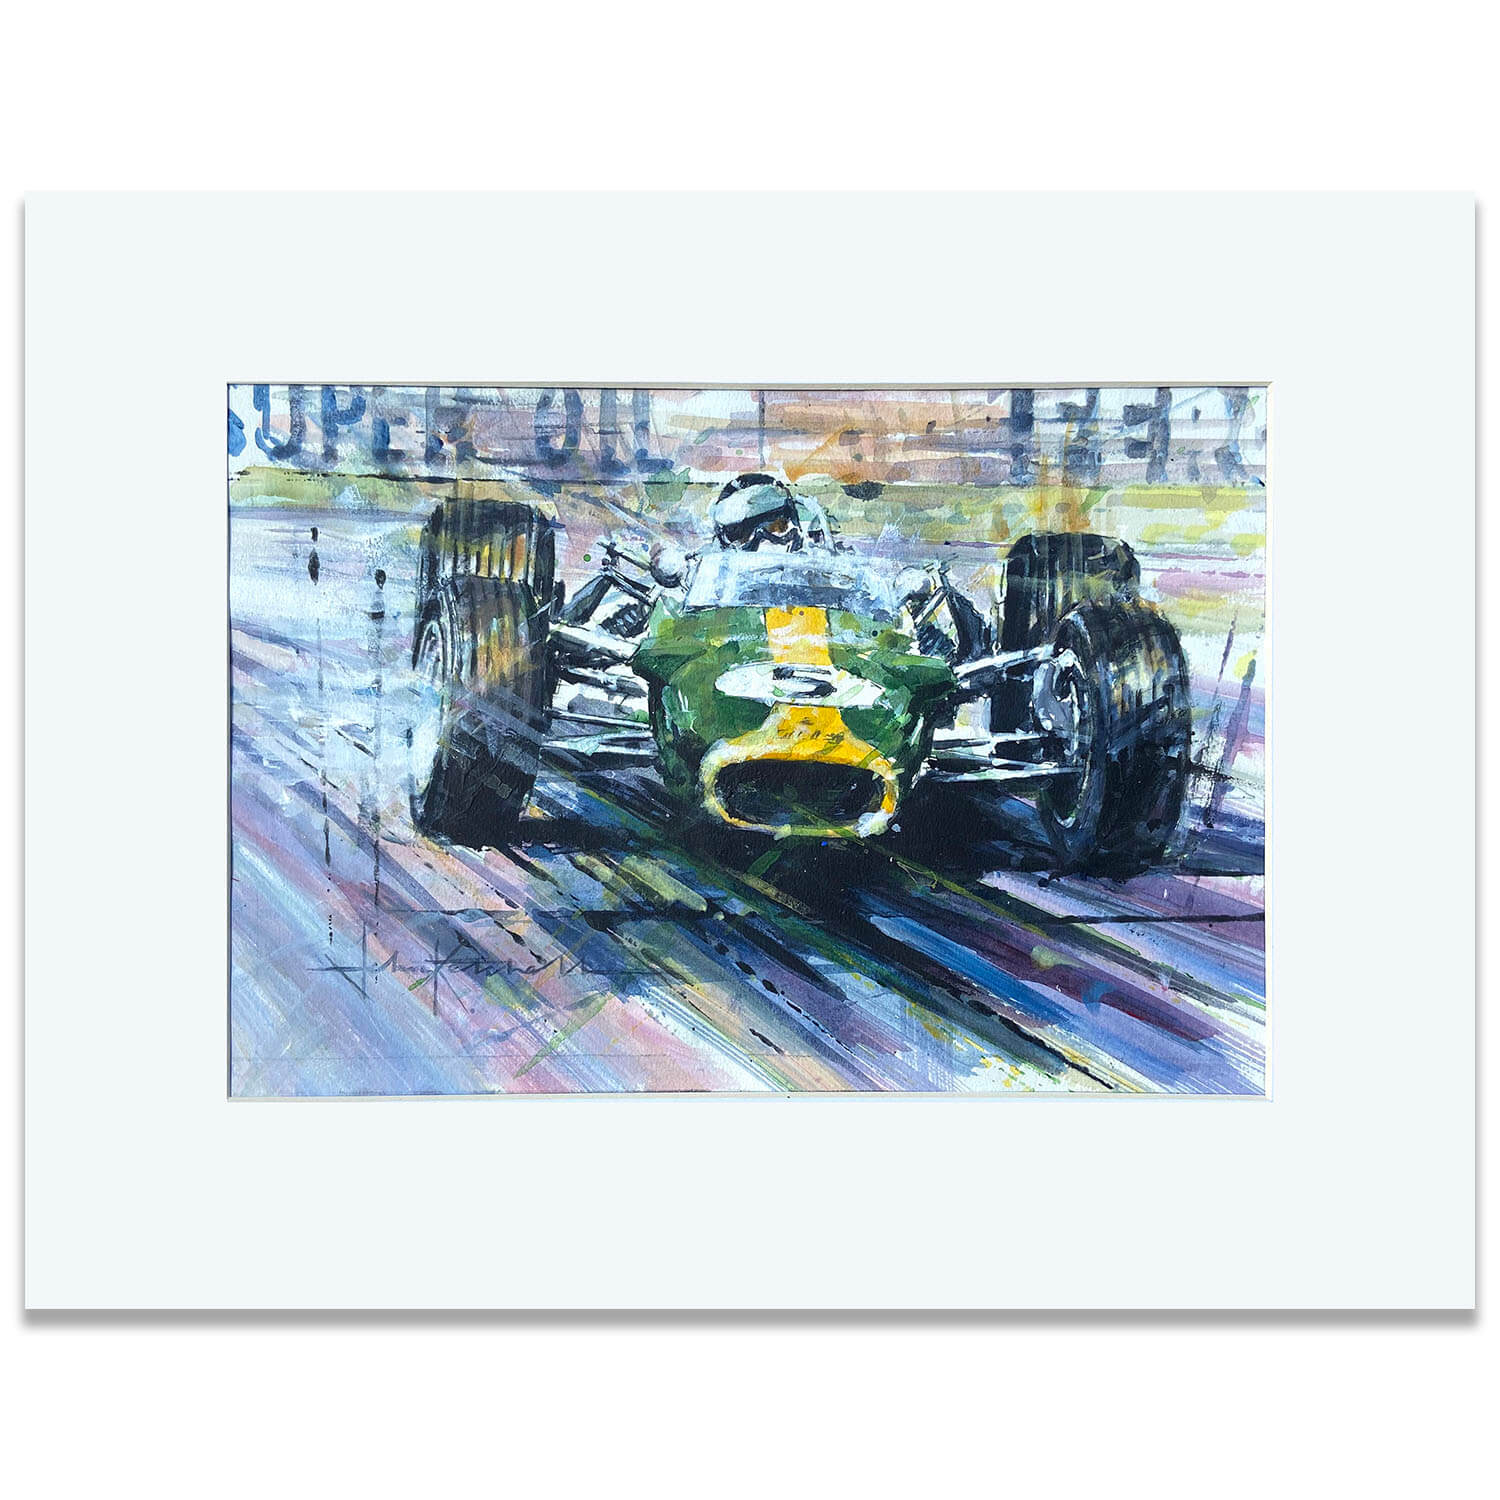 1967 British Grand Prix | Jim Clark | Lotus 49 | Preparatory Artwork